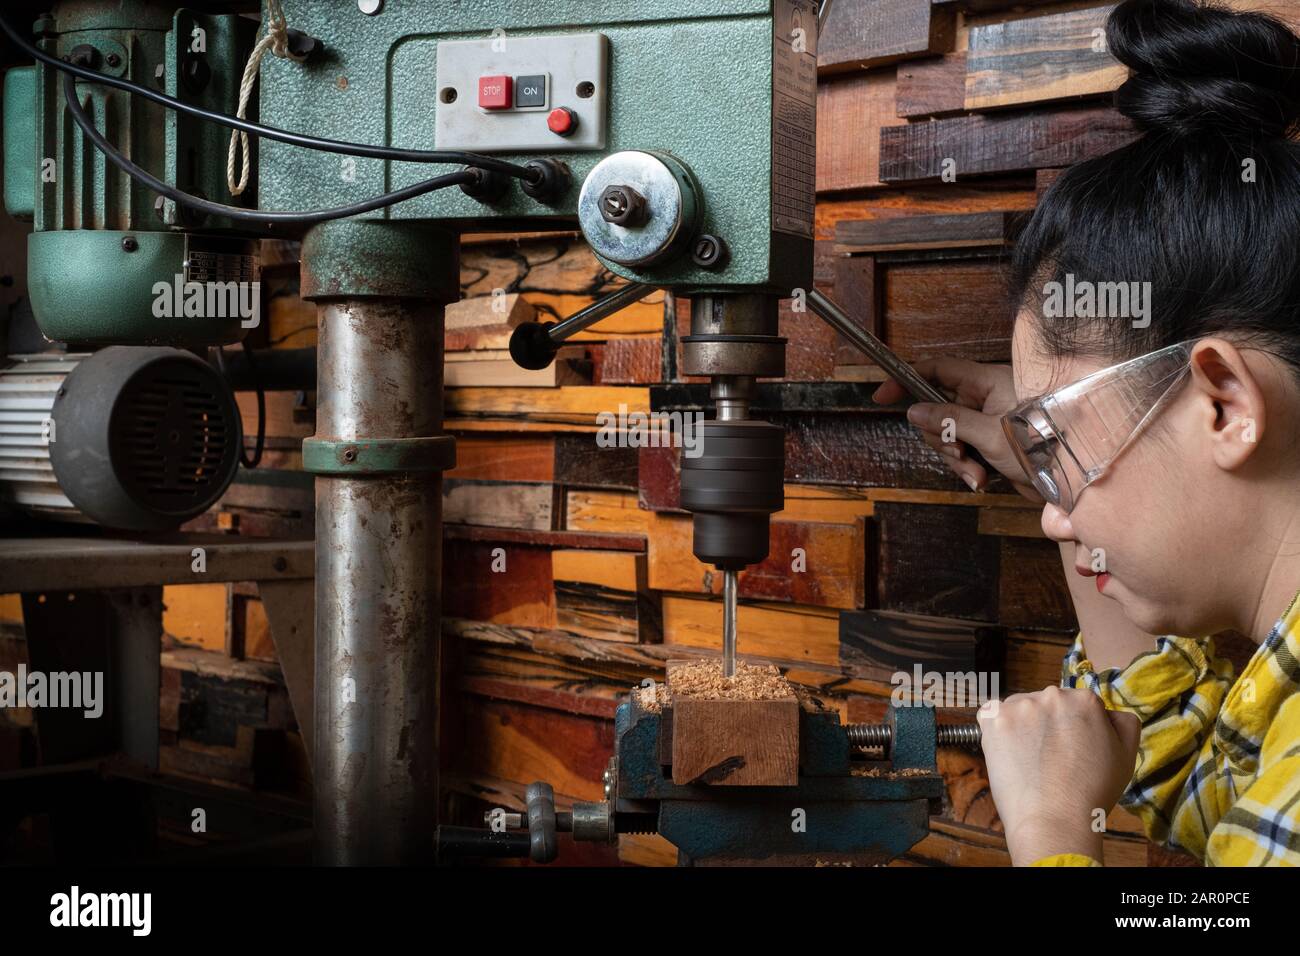 Frauen stehen ist handwerklich arbeitendes Bohrholz auf einer Werkbank mit  Bohrmaschine Presskraft Werkzeuge bei Tischlermaschine in der Werkstatt  Stockfotografie - Alamy